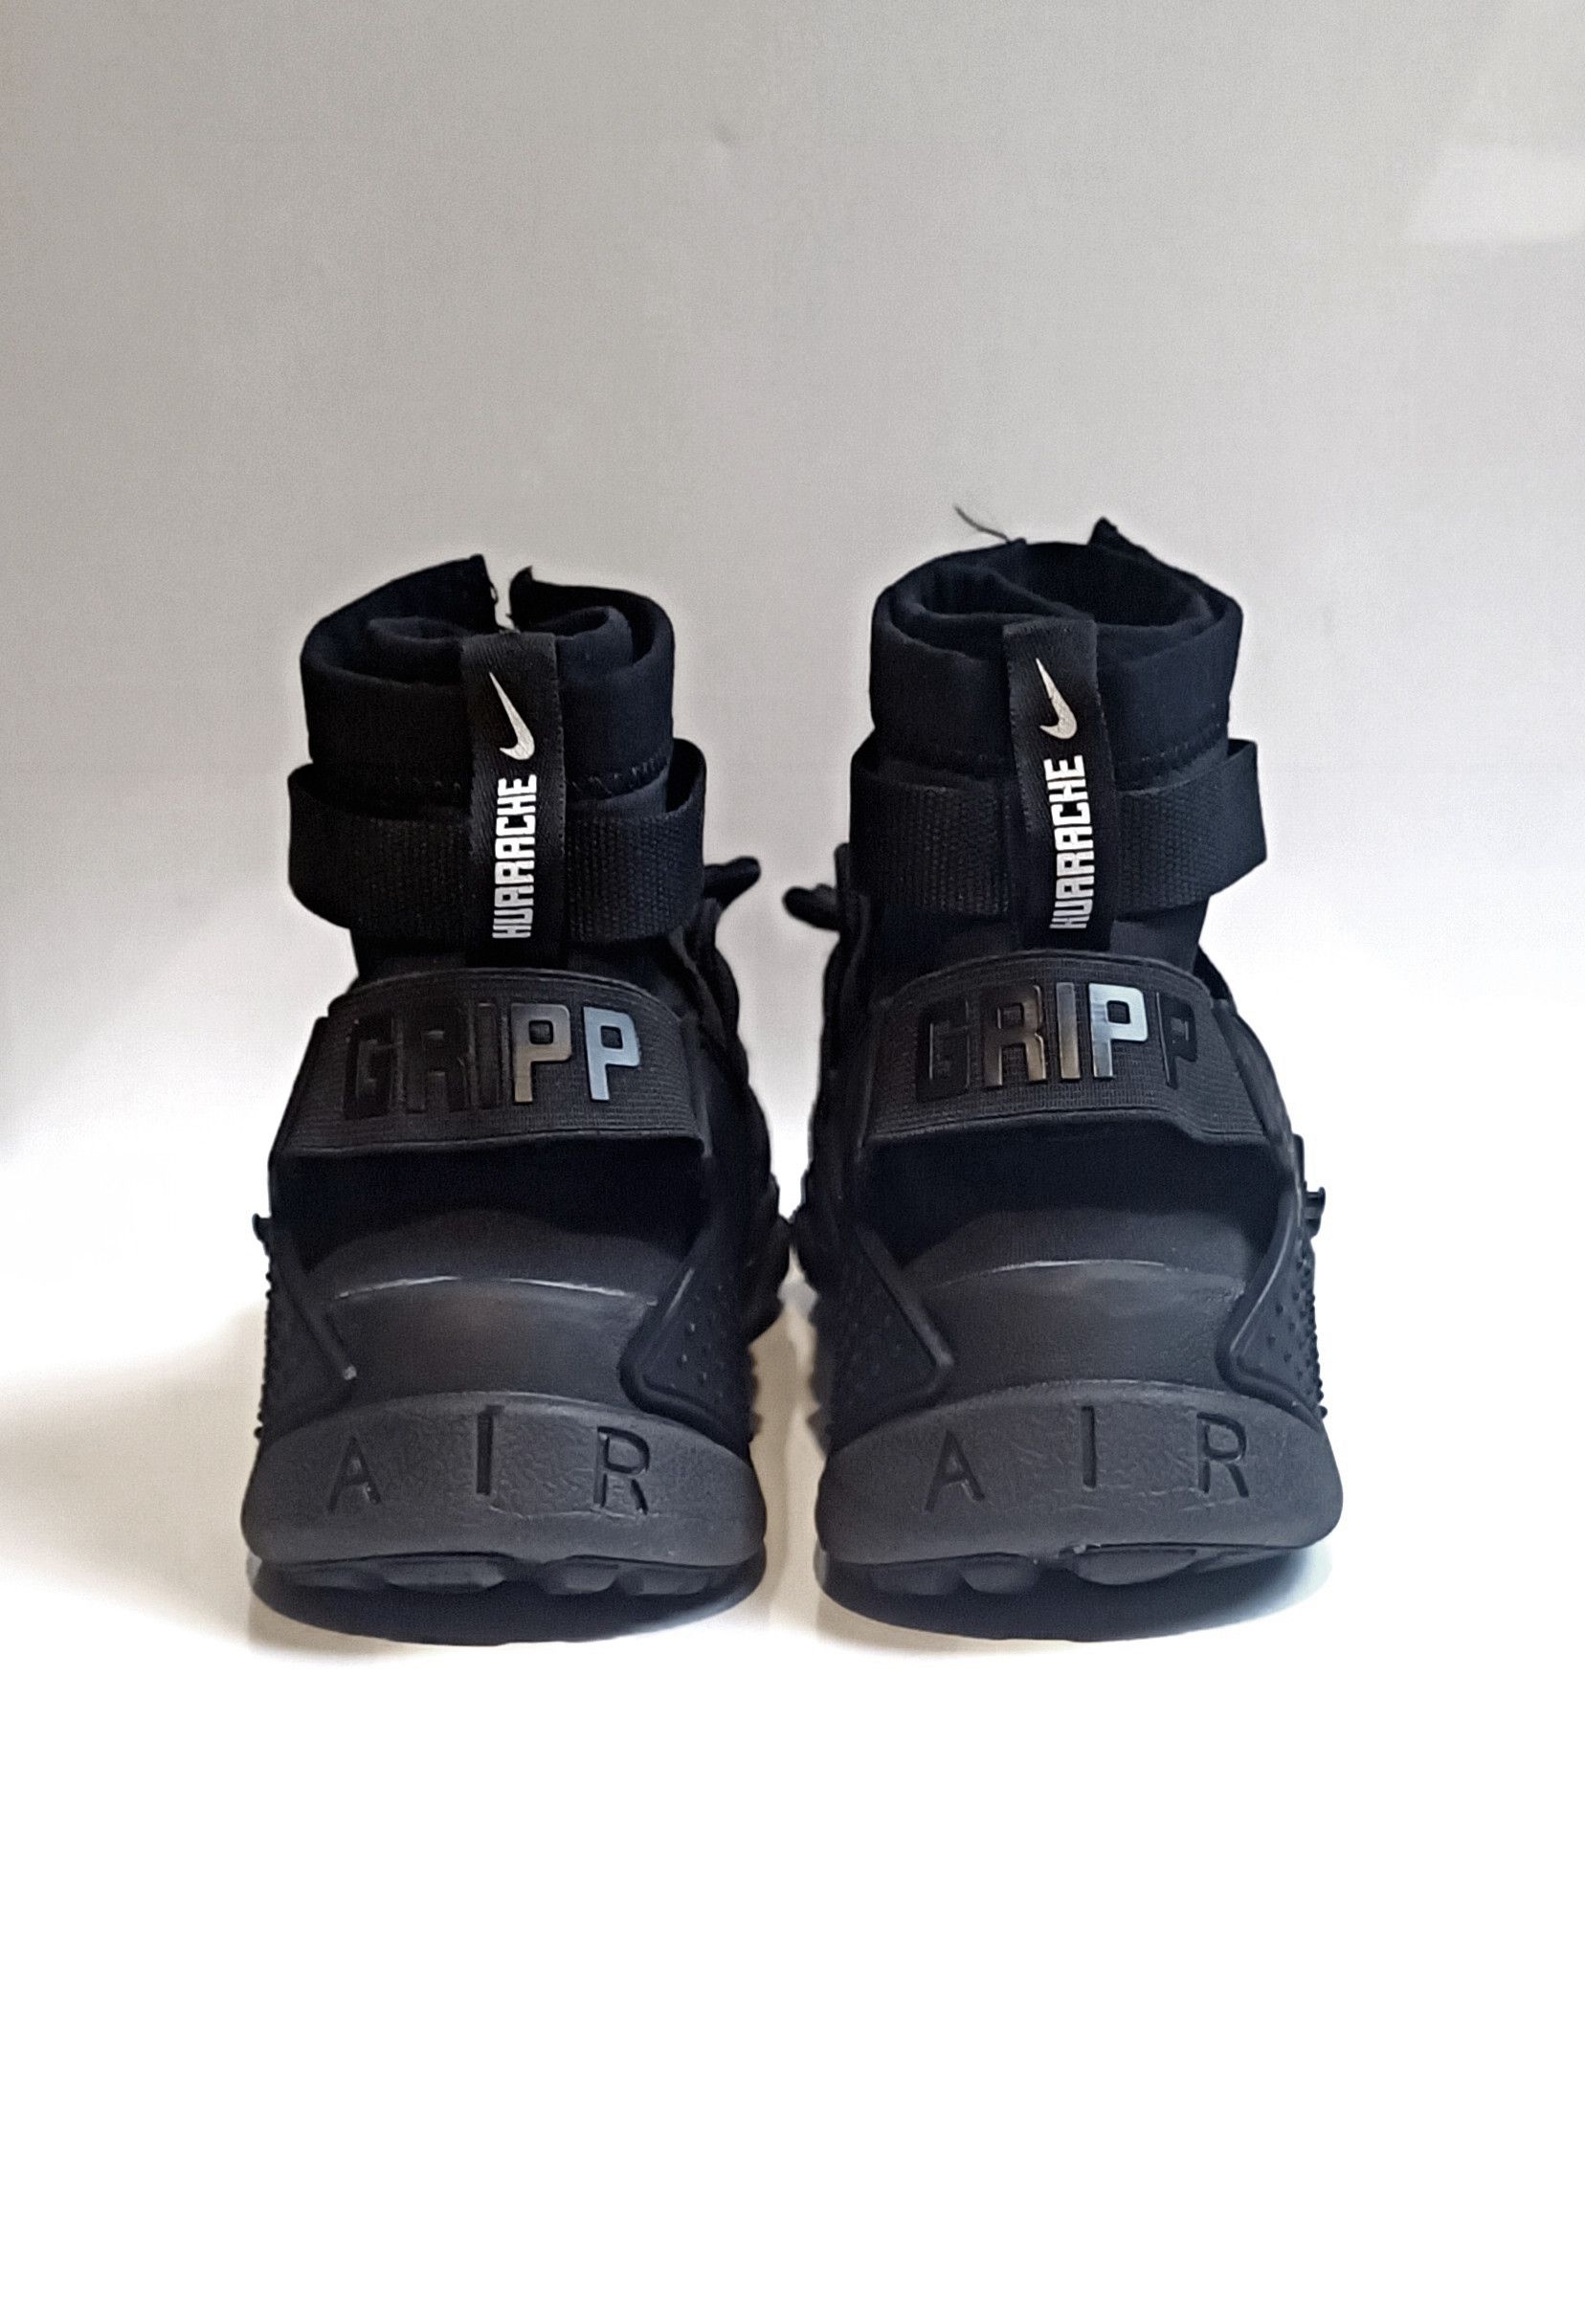 Nike Air Huarache Gripp 'Triple Black' (Rare) - 3